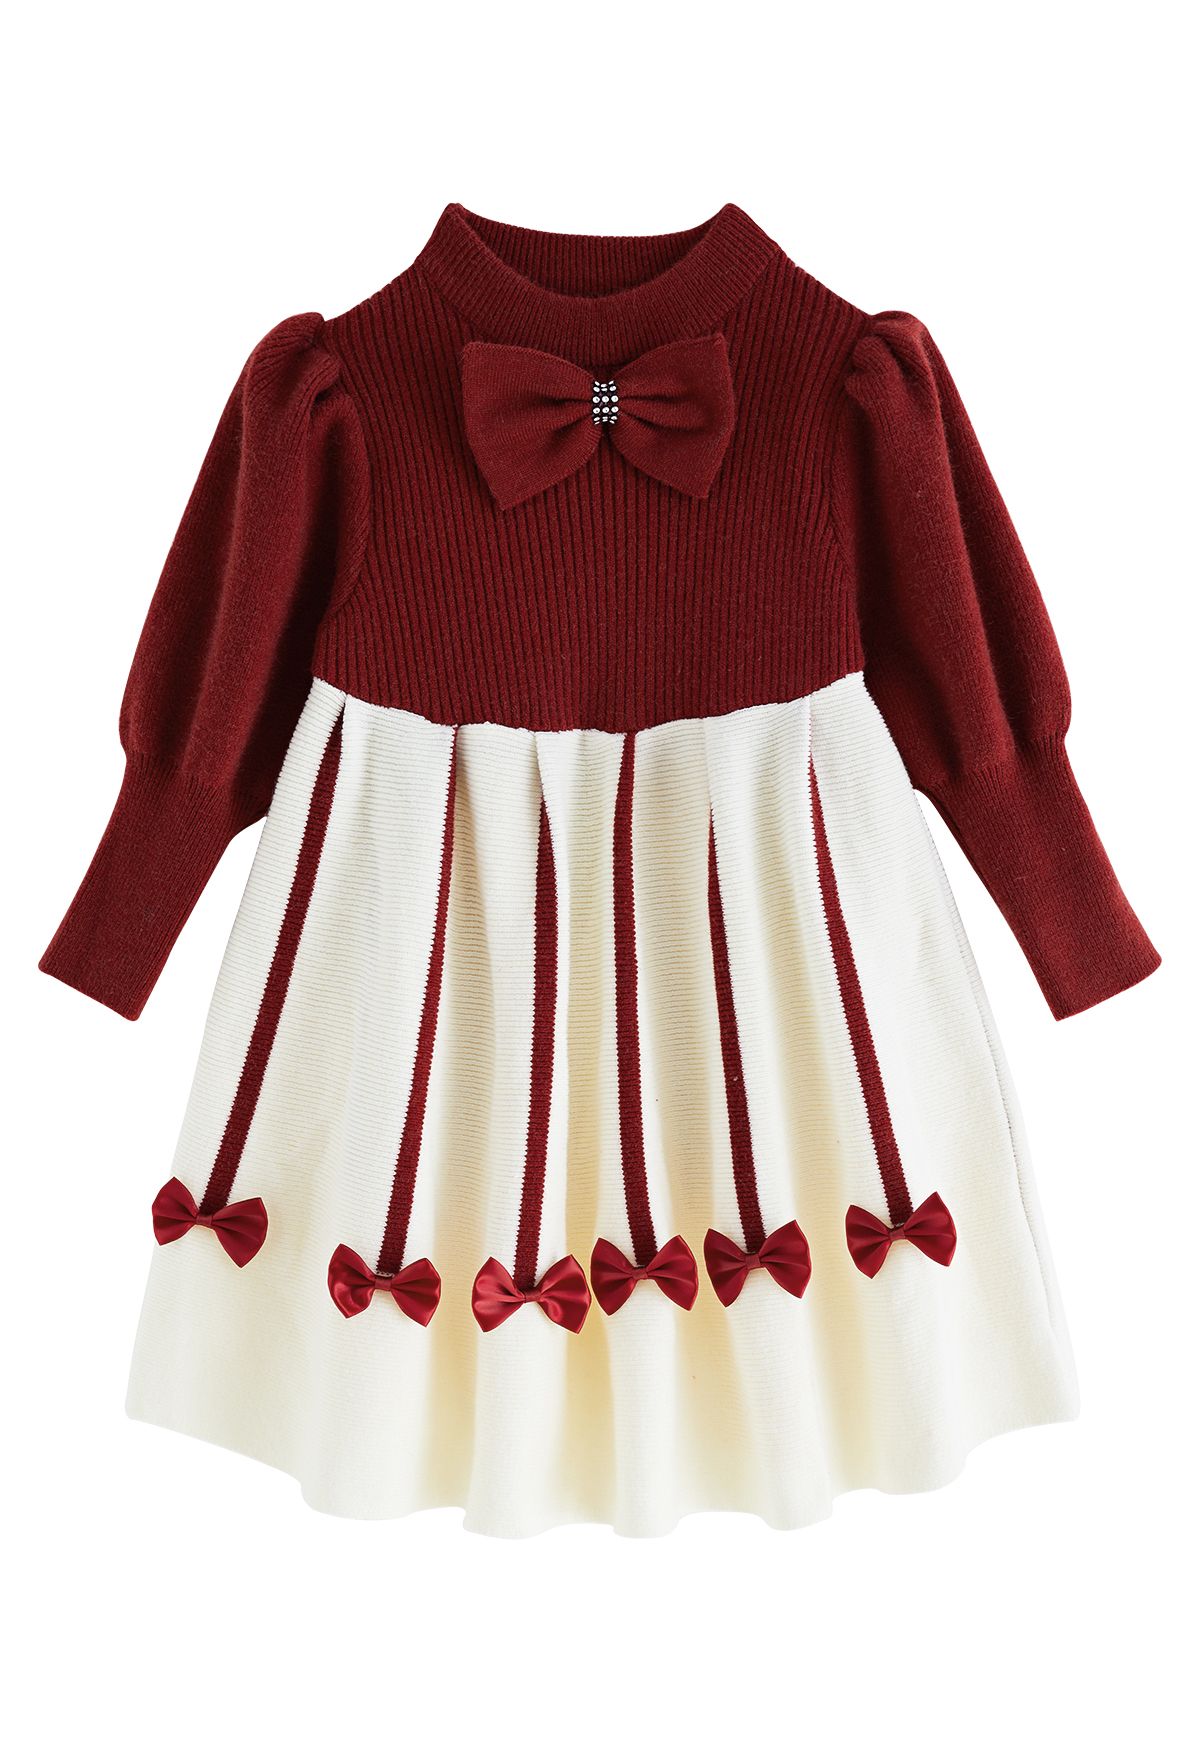 Sweet Red Bowknot Knit Dress pour les enfants